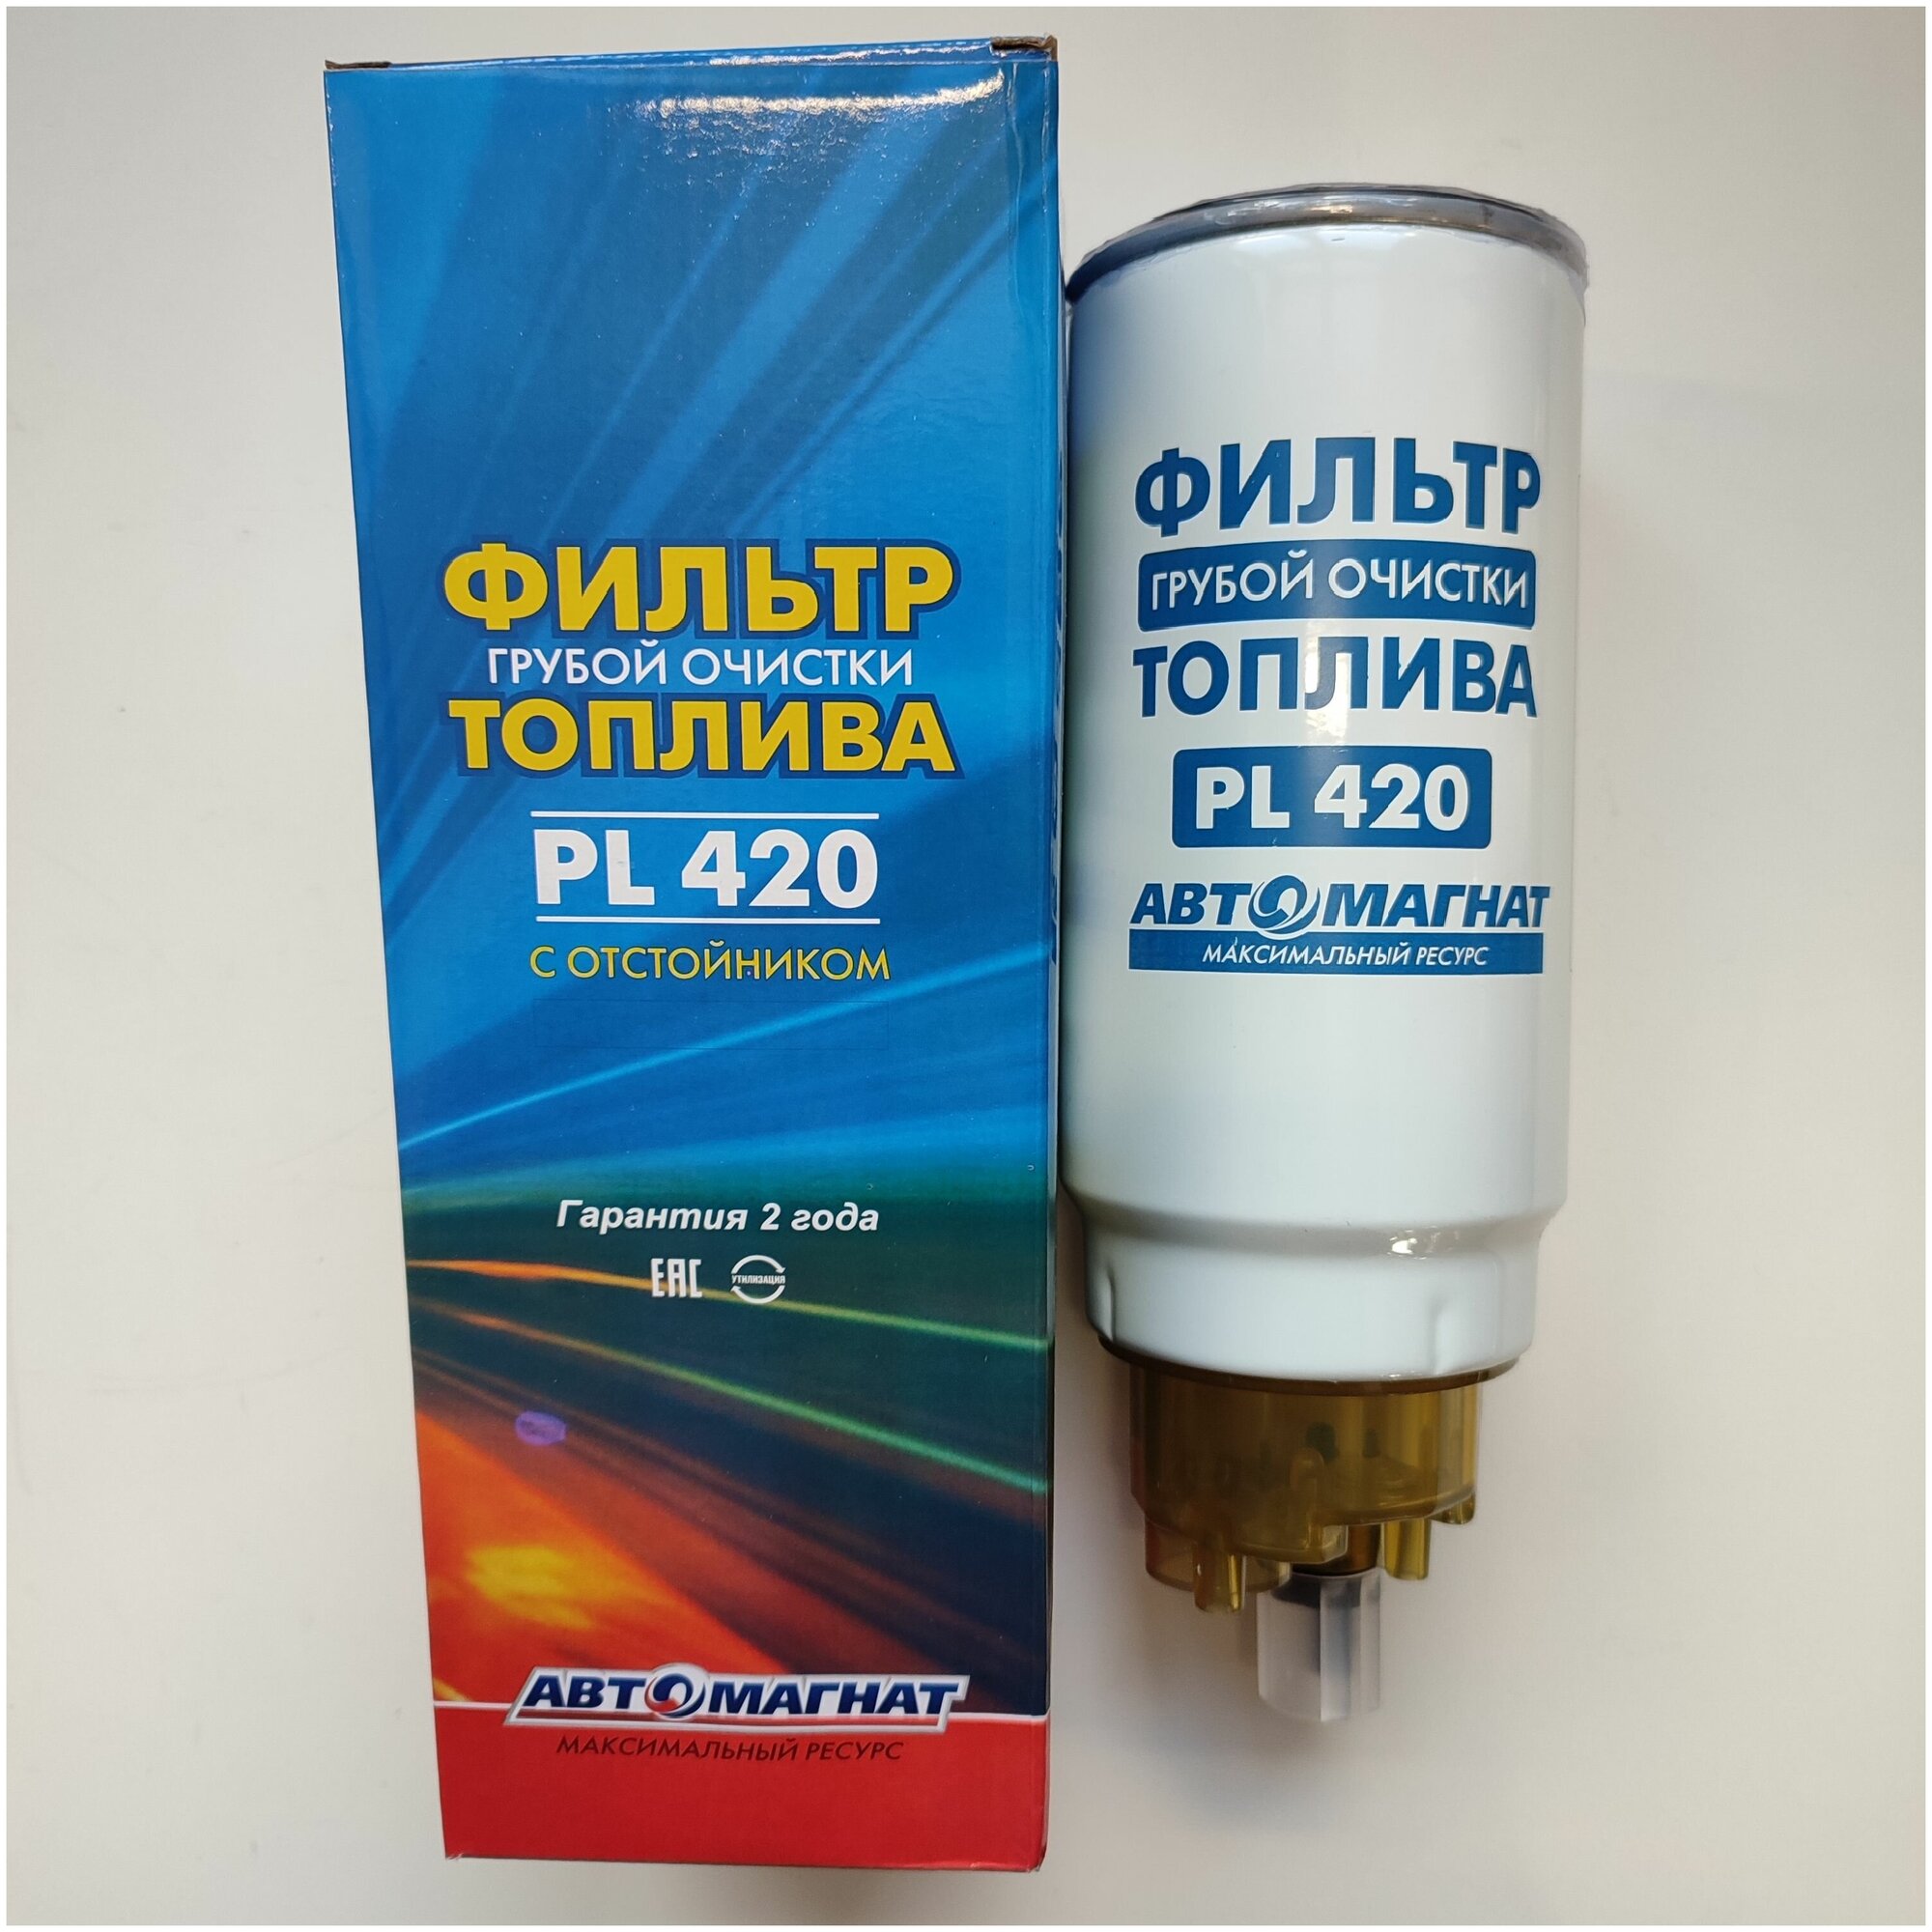 Фильтр грубой очистки топлива, элемент PL-420 с отстойником (стаканом) евро 2, автомагнат для сепаратора Preline